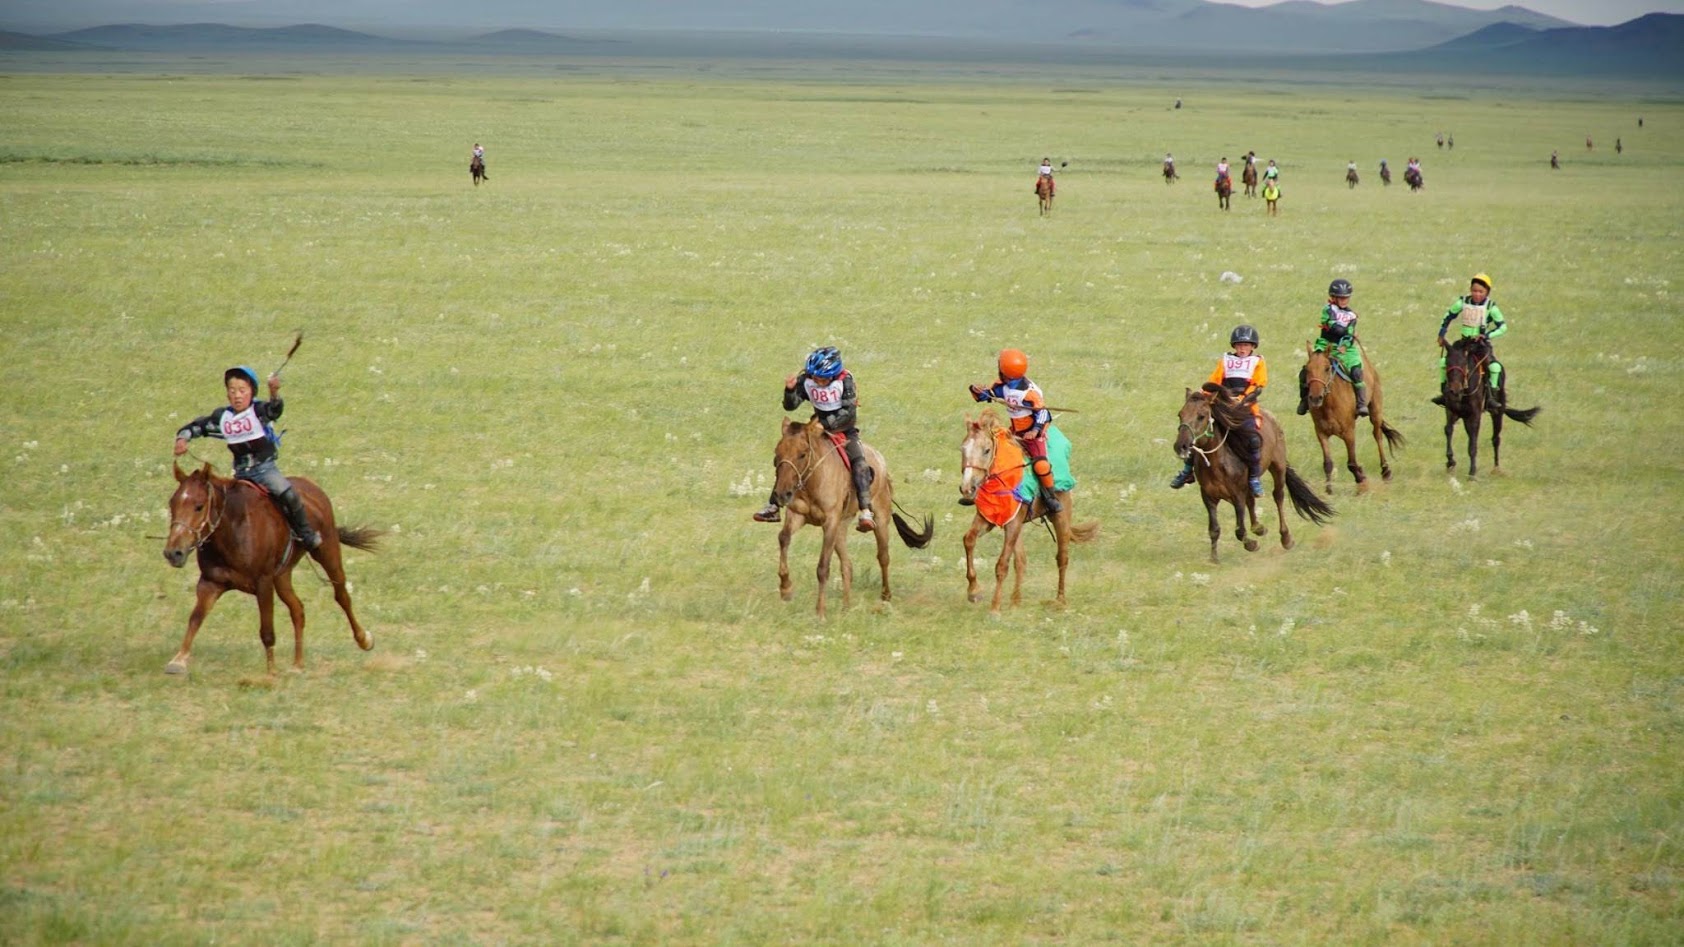 Naadam festival Mongolia horse race - Why visit mongolia